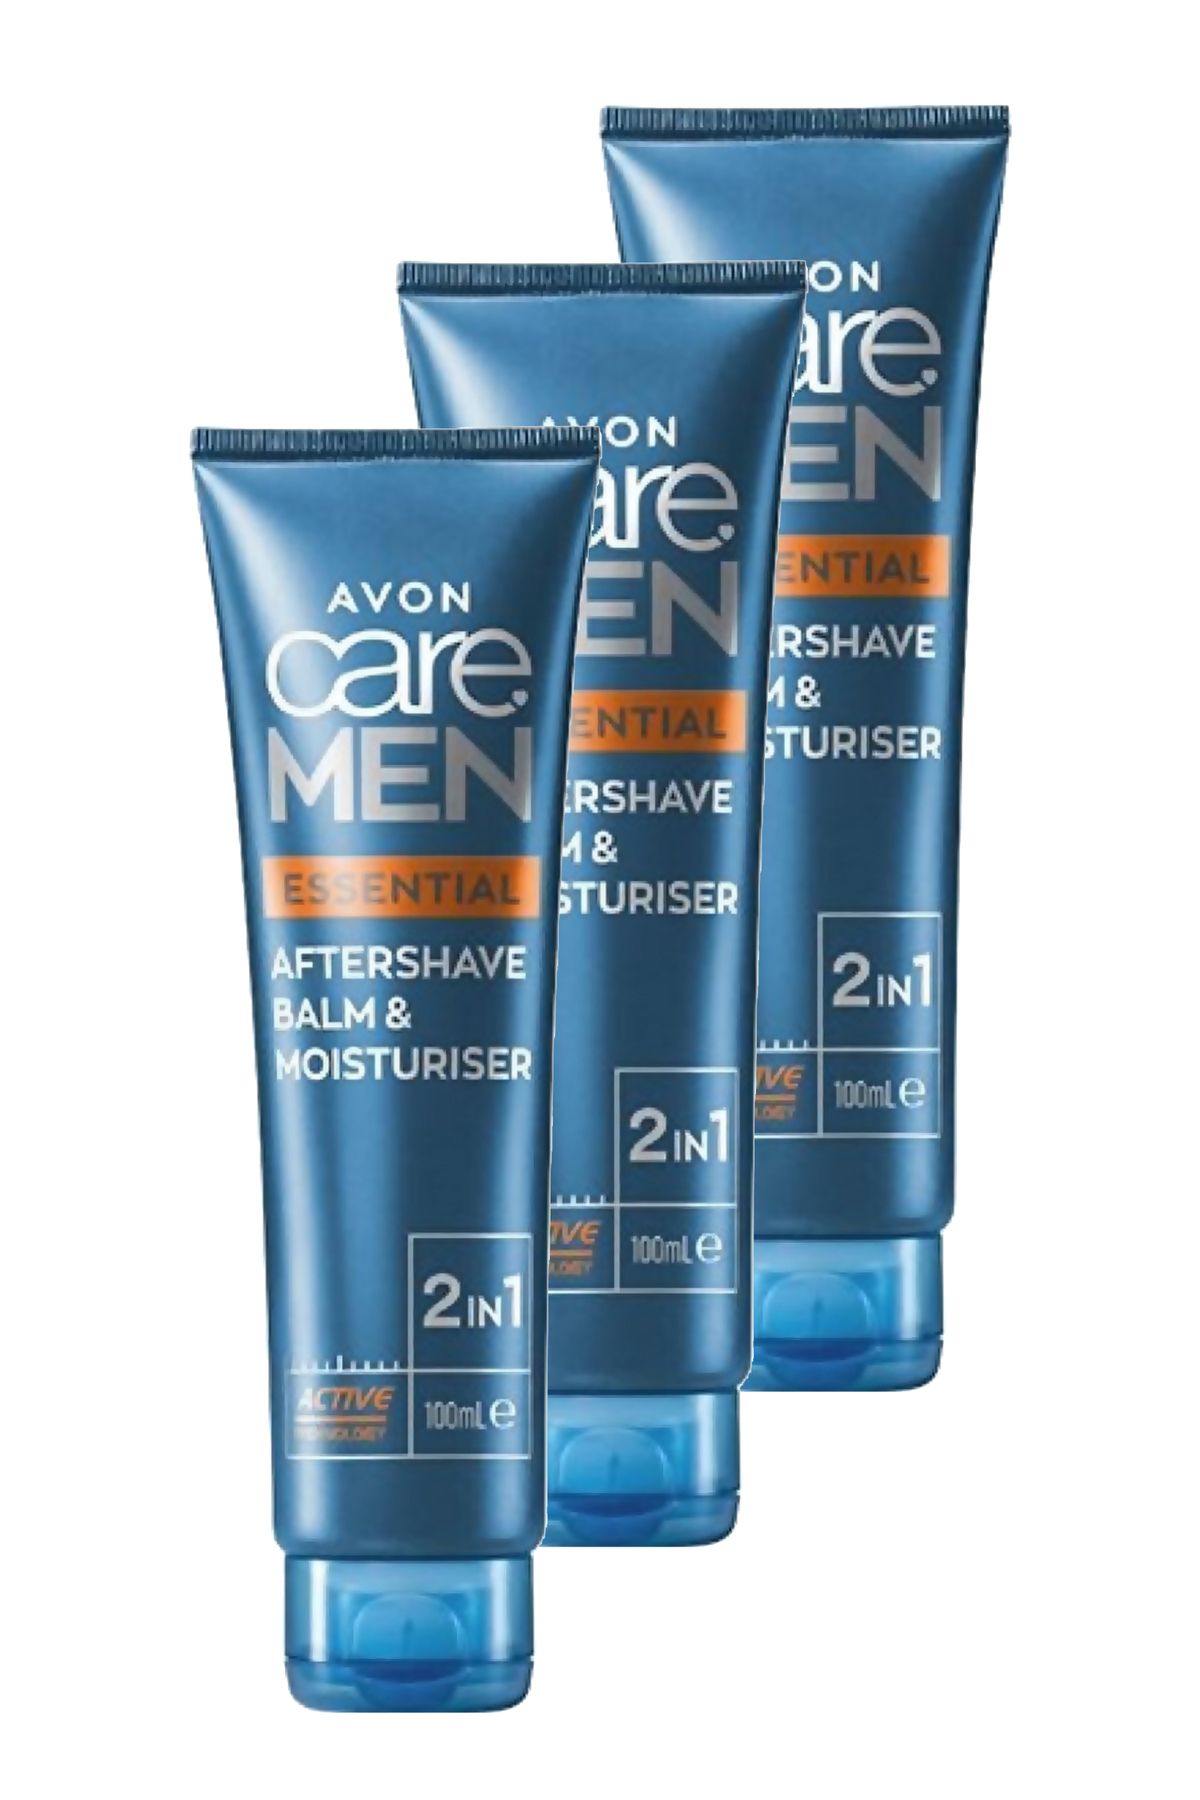 Avon Care Men Essential 2 si 1 Arada Tıraş Sonrası Balmı ve Nemlendiricisi 100 Ml. Üçlü Set